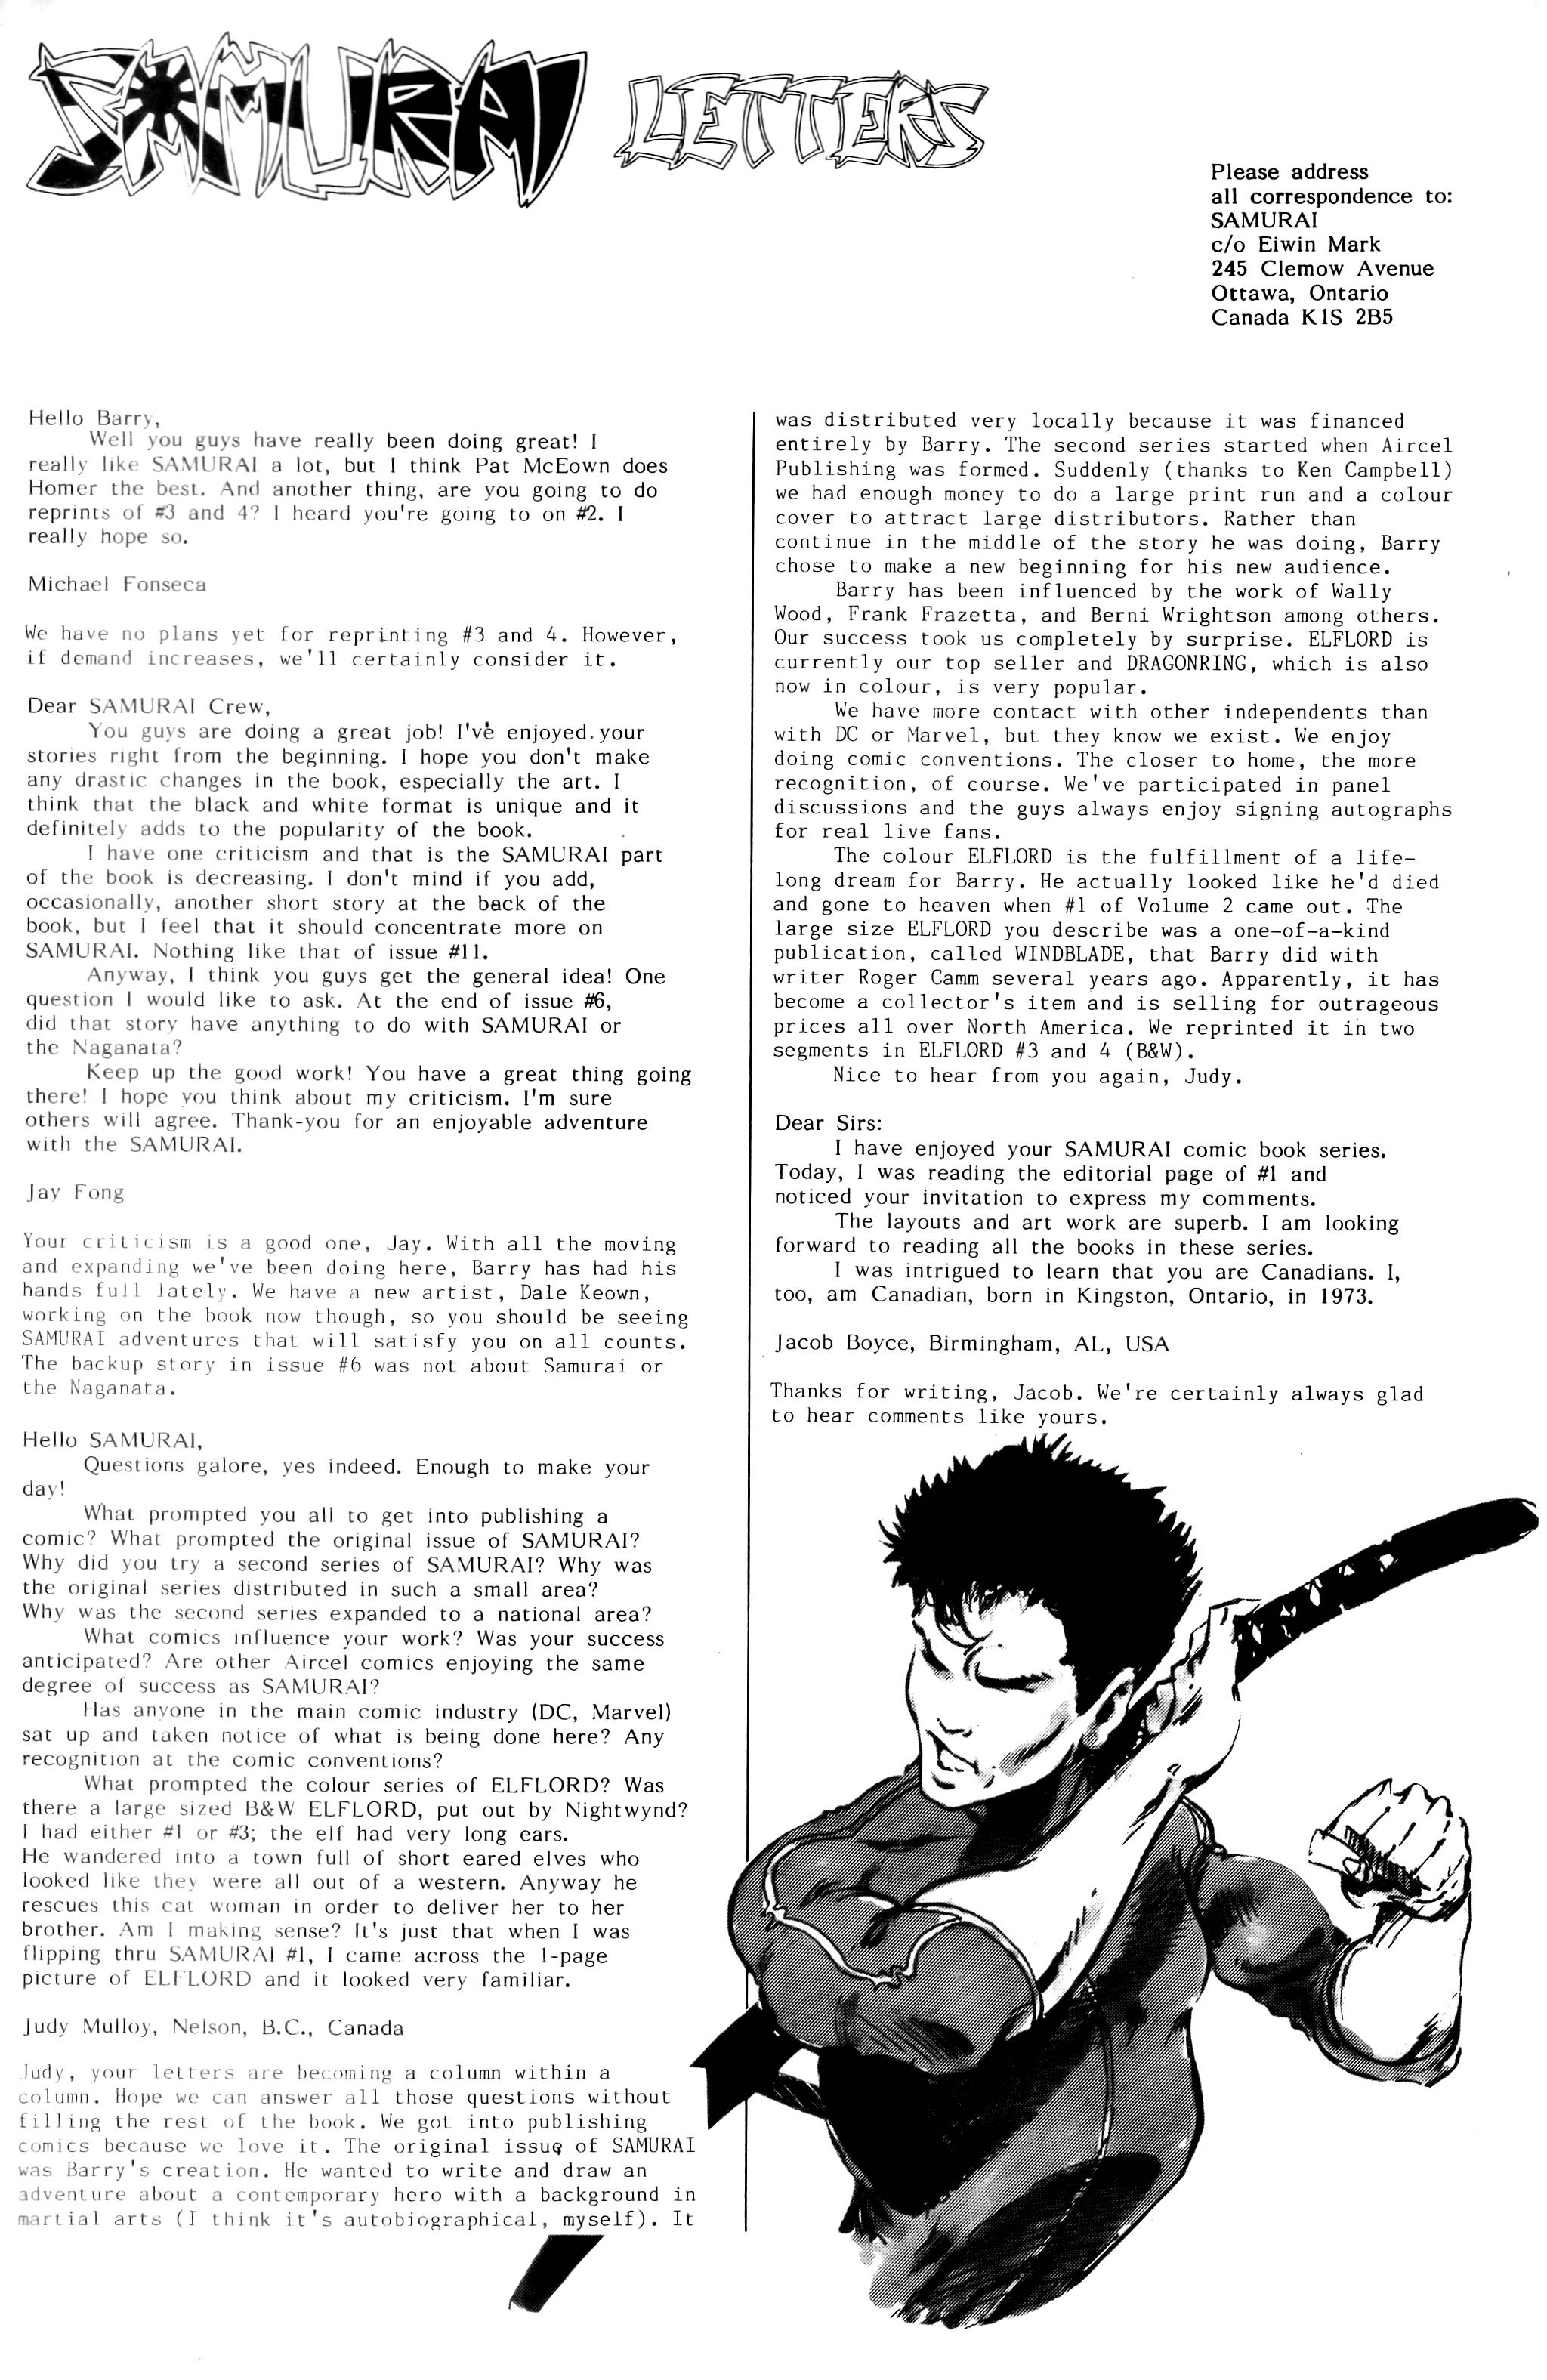 Read online Samurai comic -  Issue #15 - 26